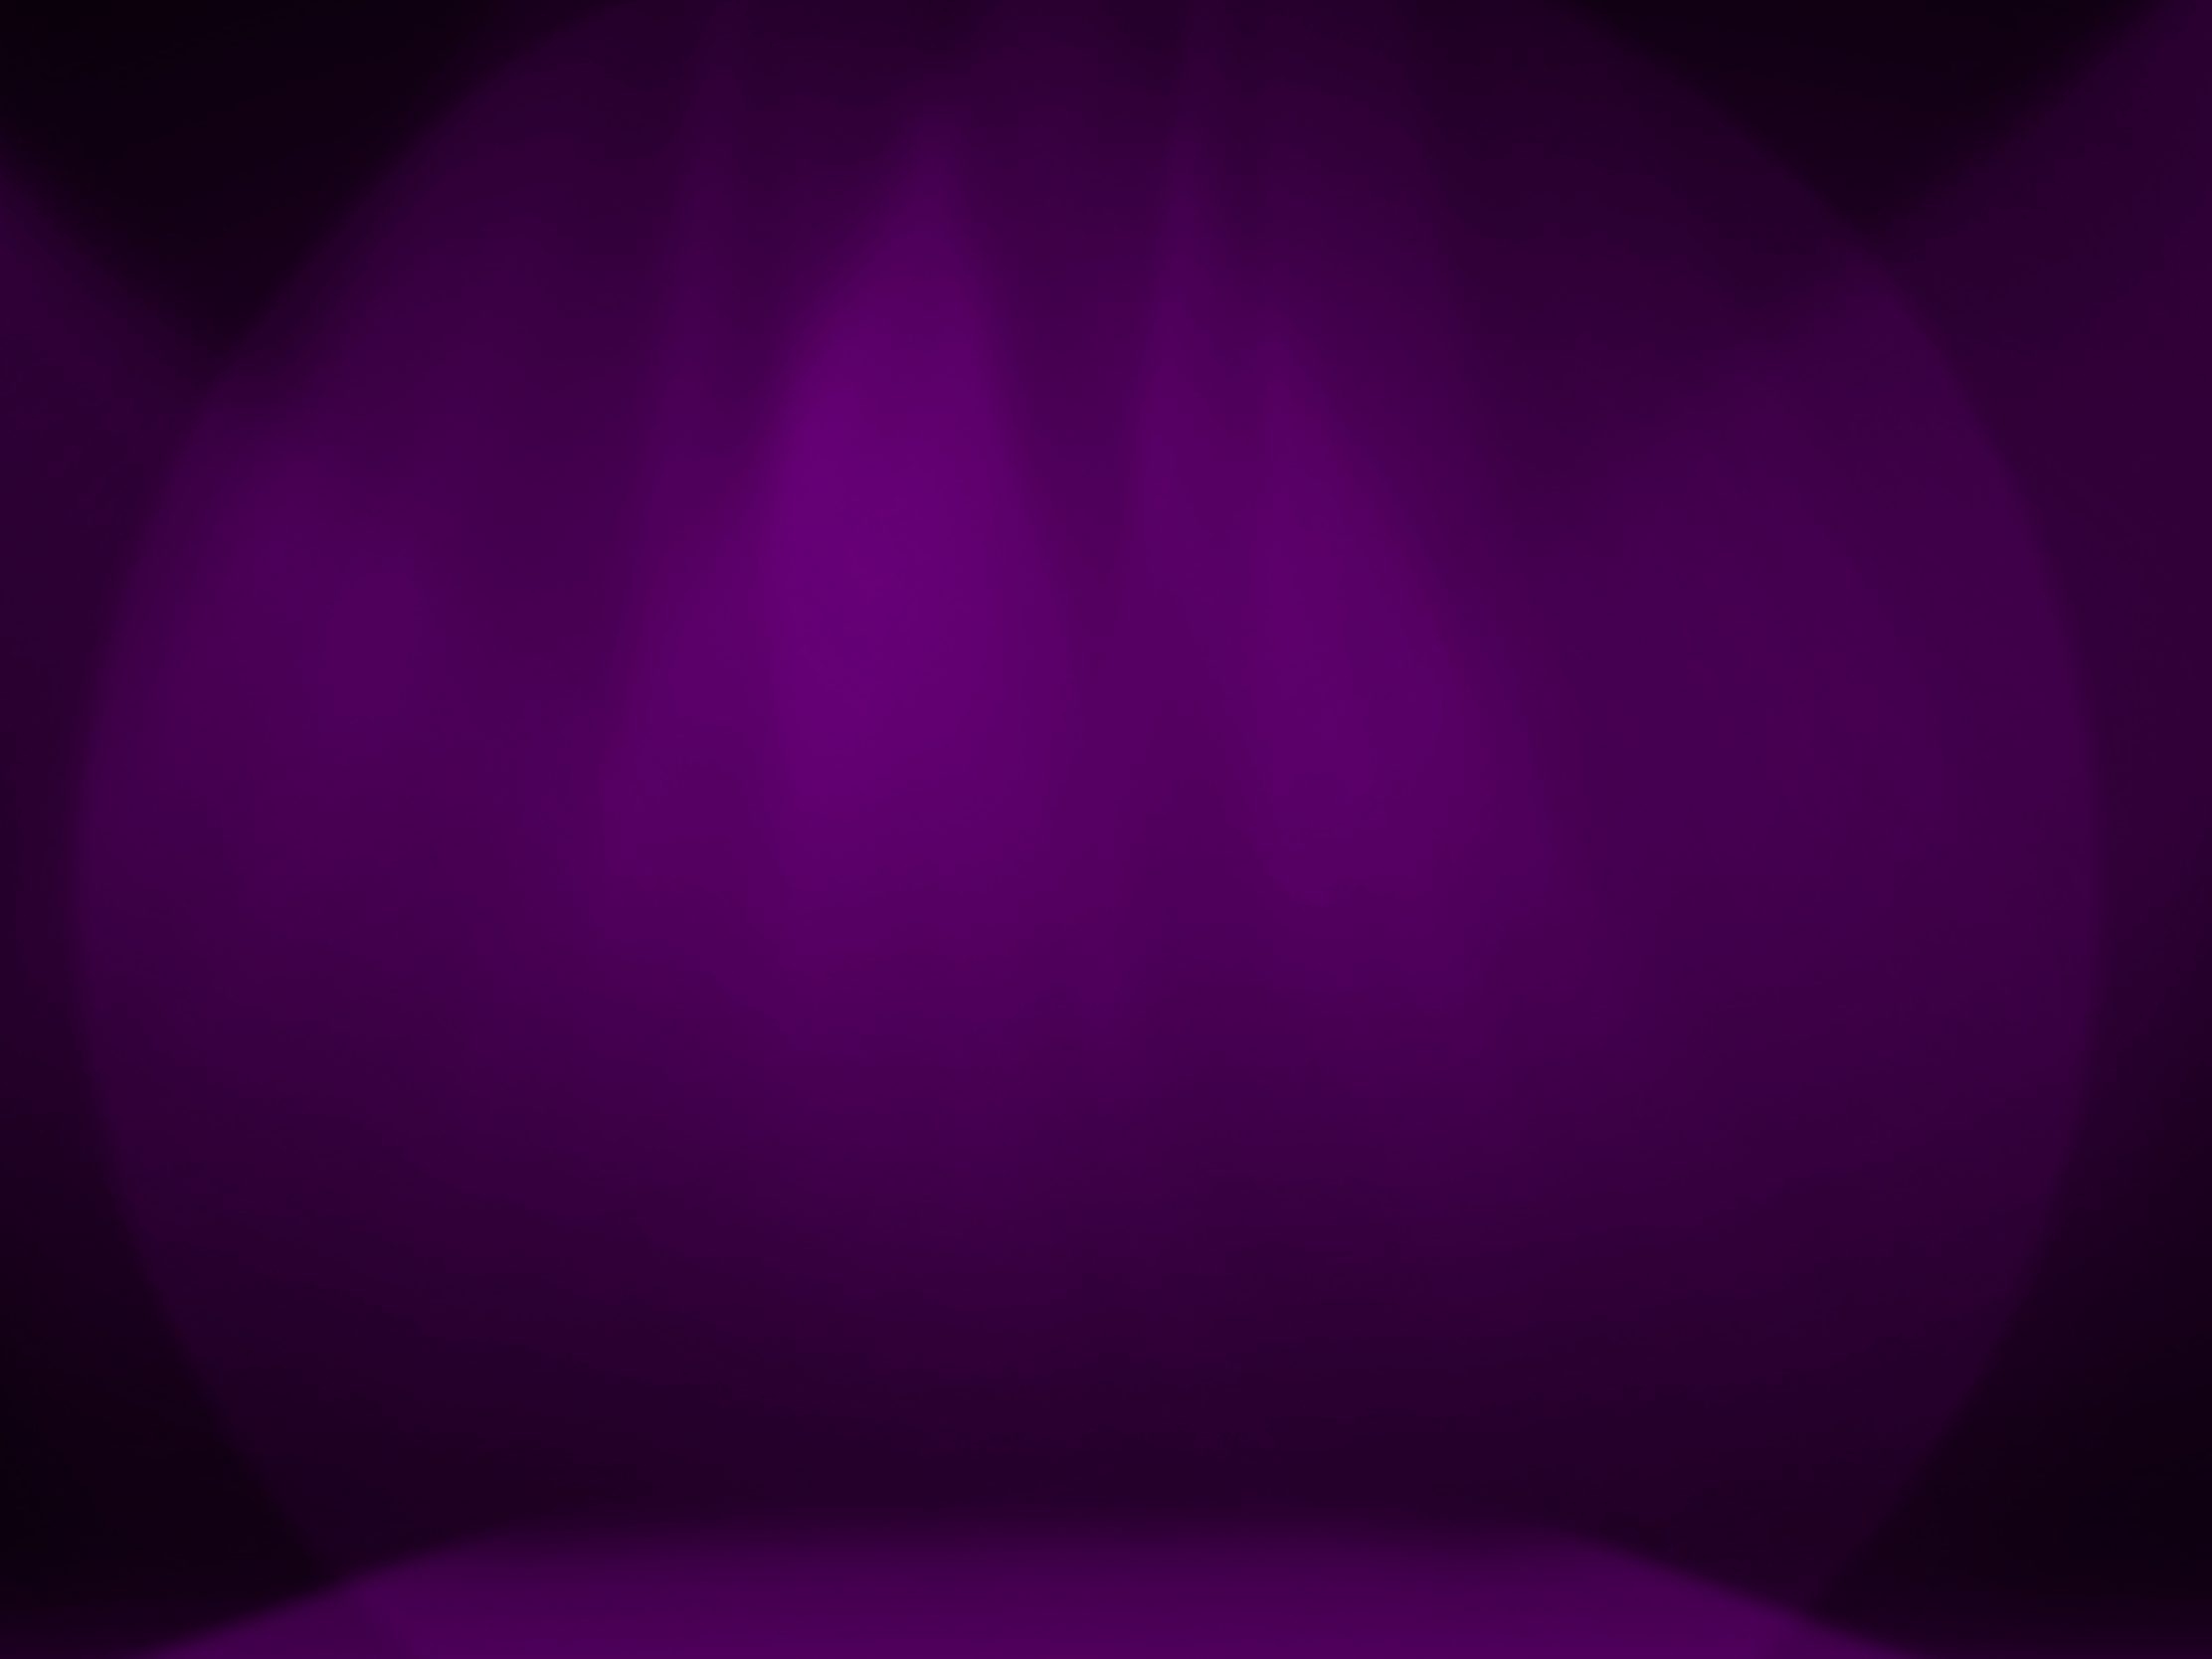 2224x1668 iPad Pro wallpapers Purple Stage Decoration iPad Wallpaper 2224x1668 pixels resolution